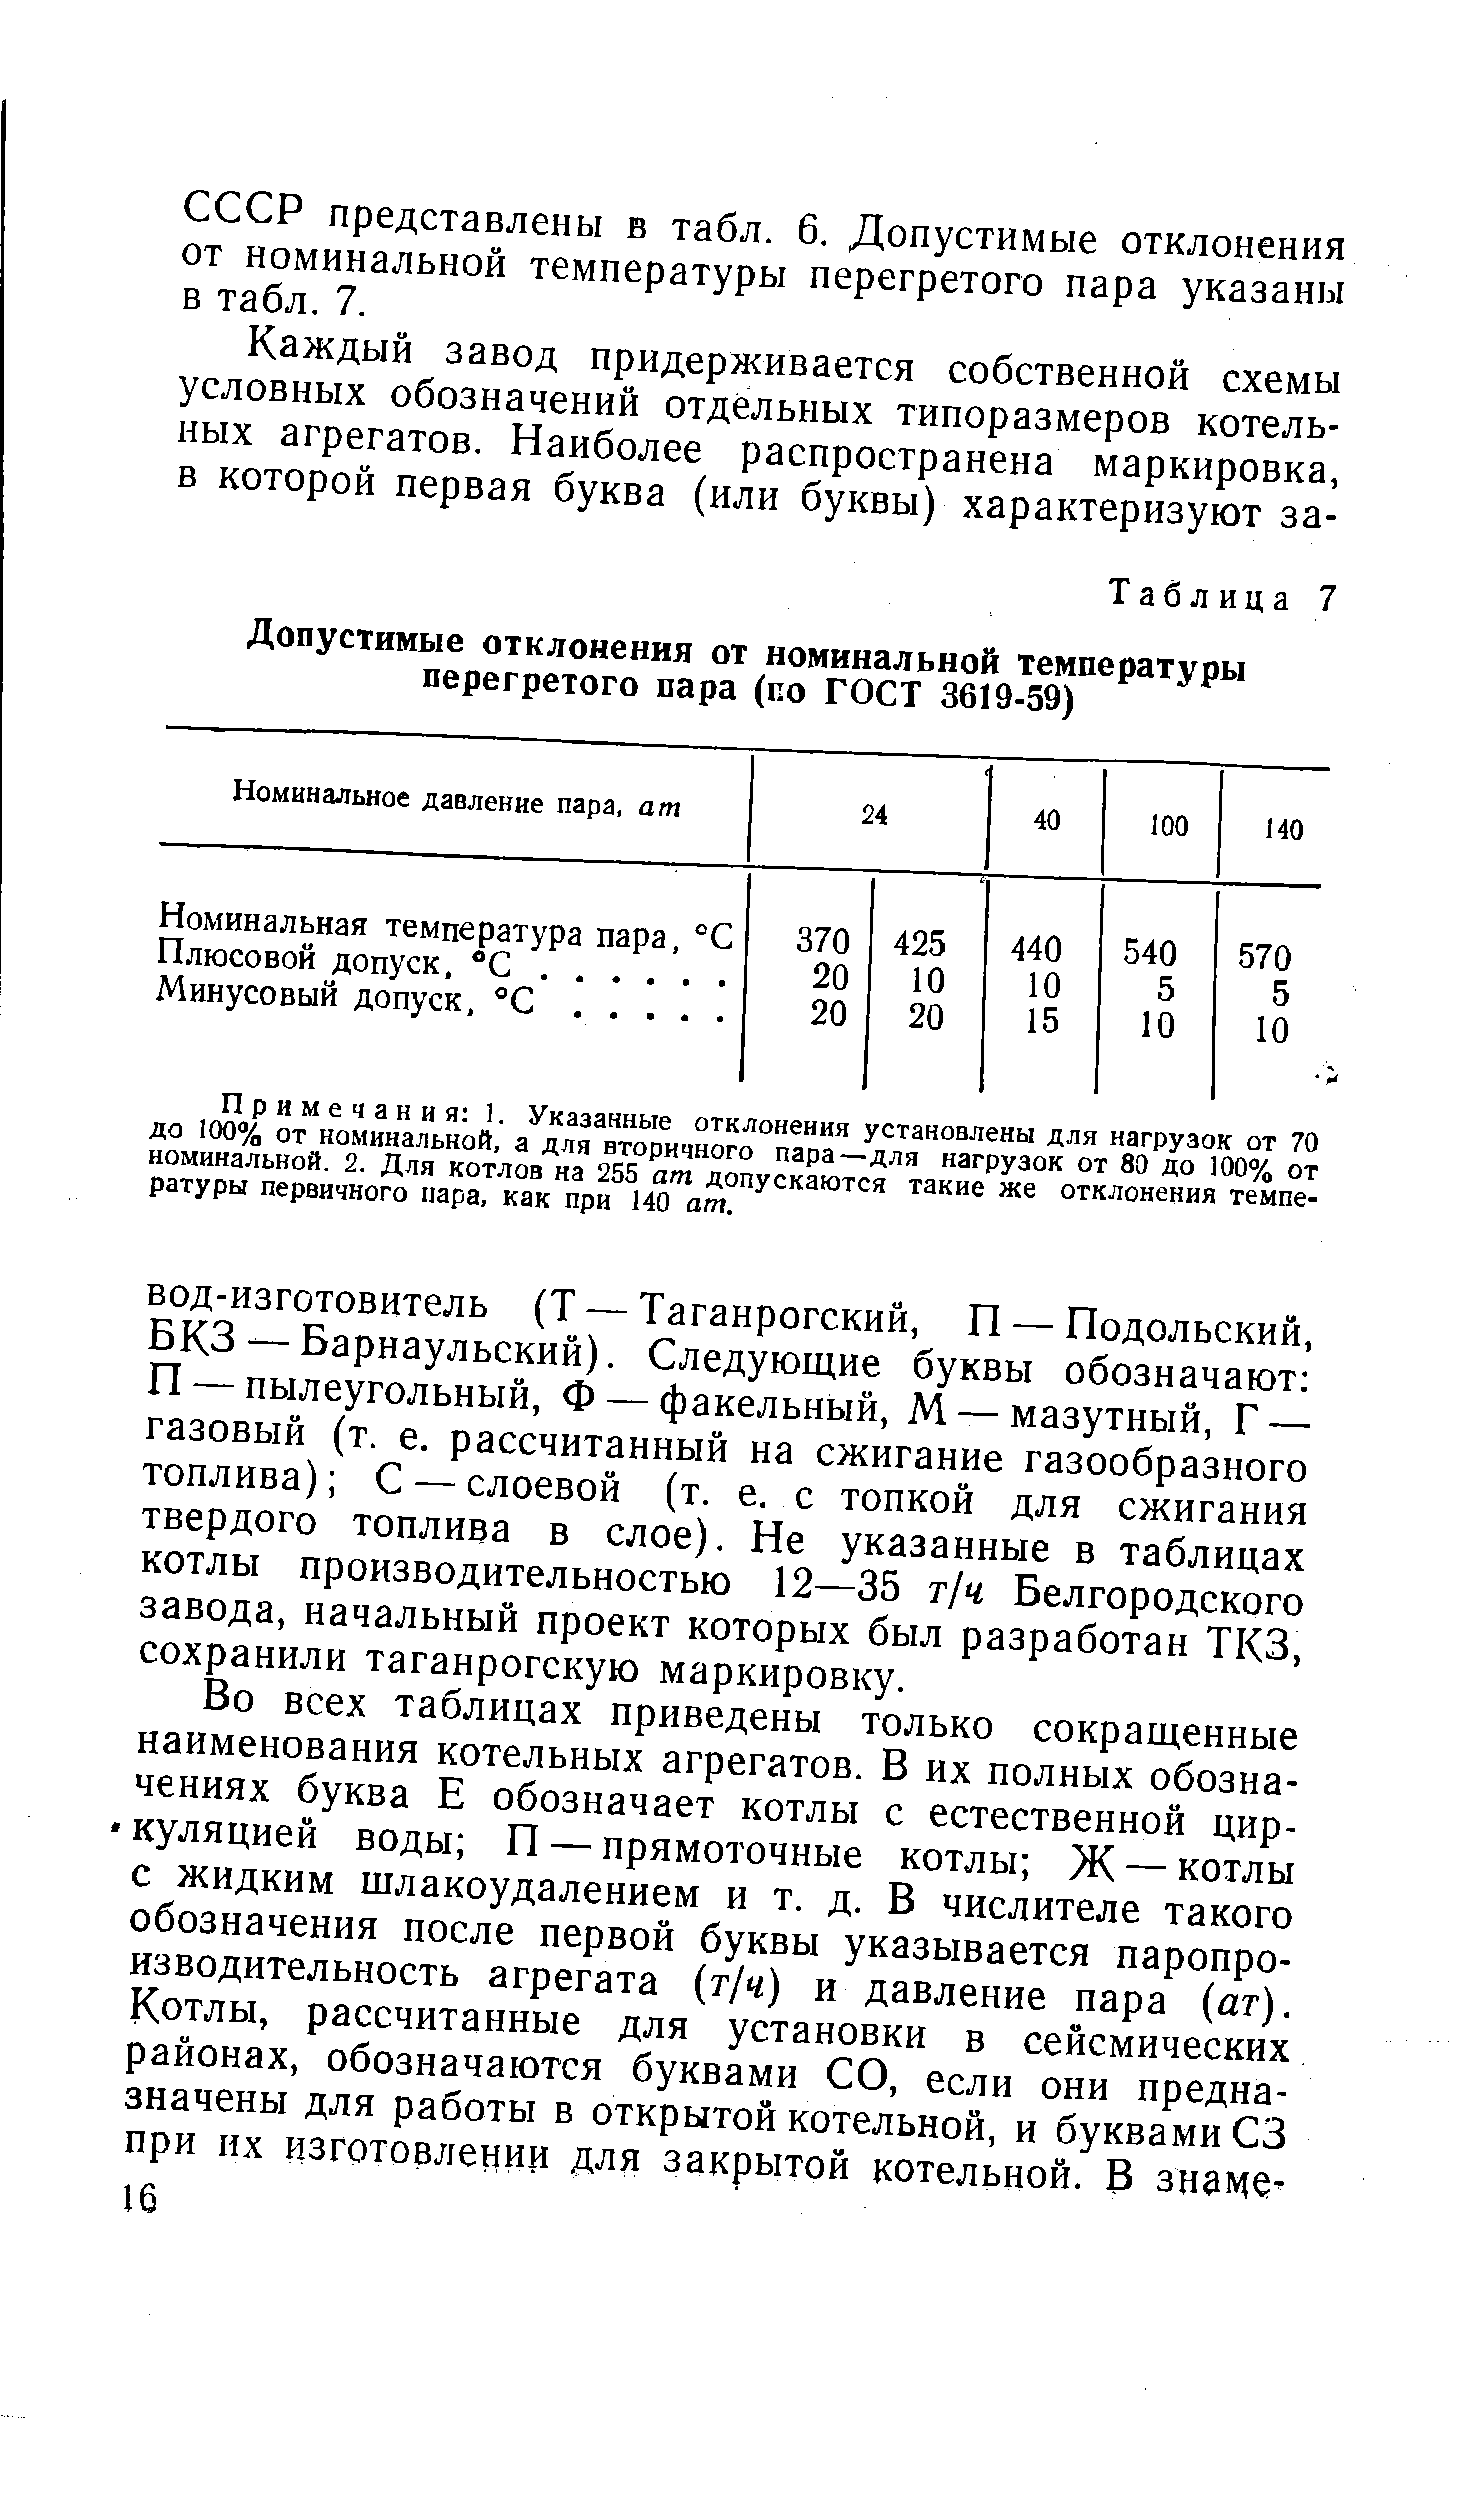 СССР представлены в табл. 6. Допустимые отклонения от номинальной температуры перегретого пара указаны в табл. 7.
